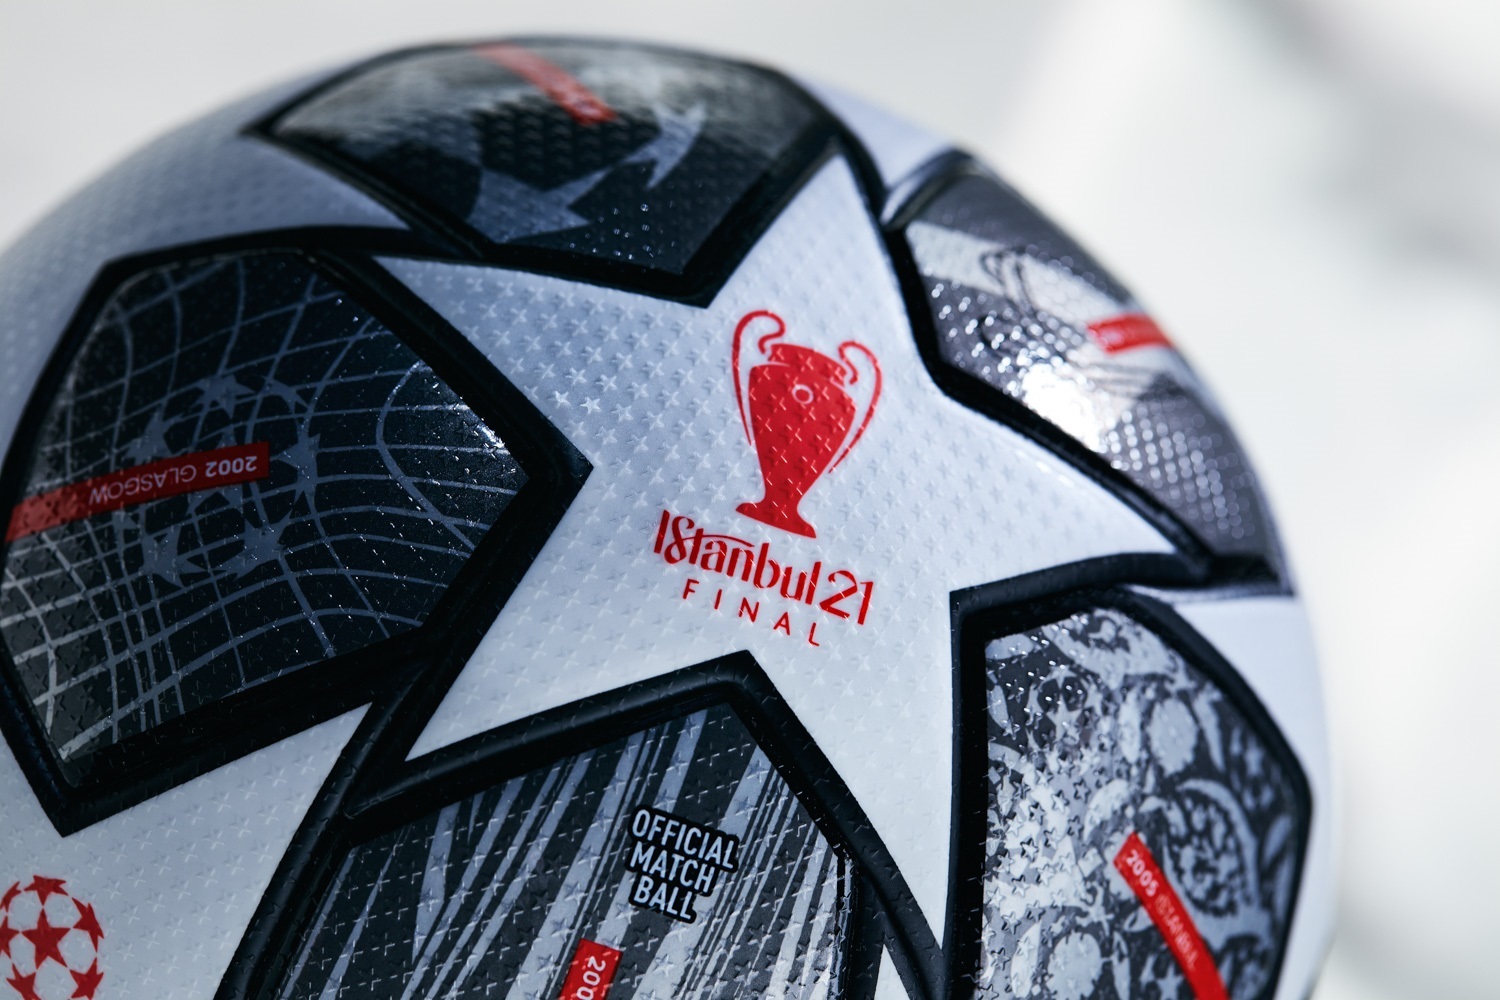 Fútbol/Liga Campeones.- El Finale Istambul 21 de adidas, balón de la final de Liga de Campeones - Infobae